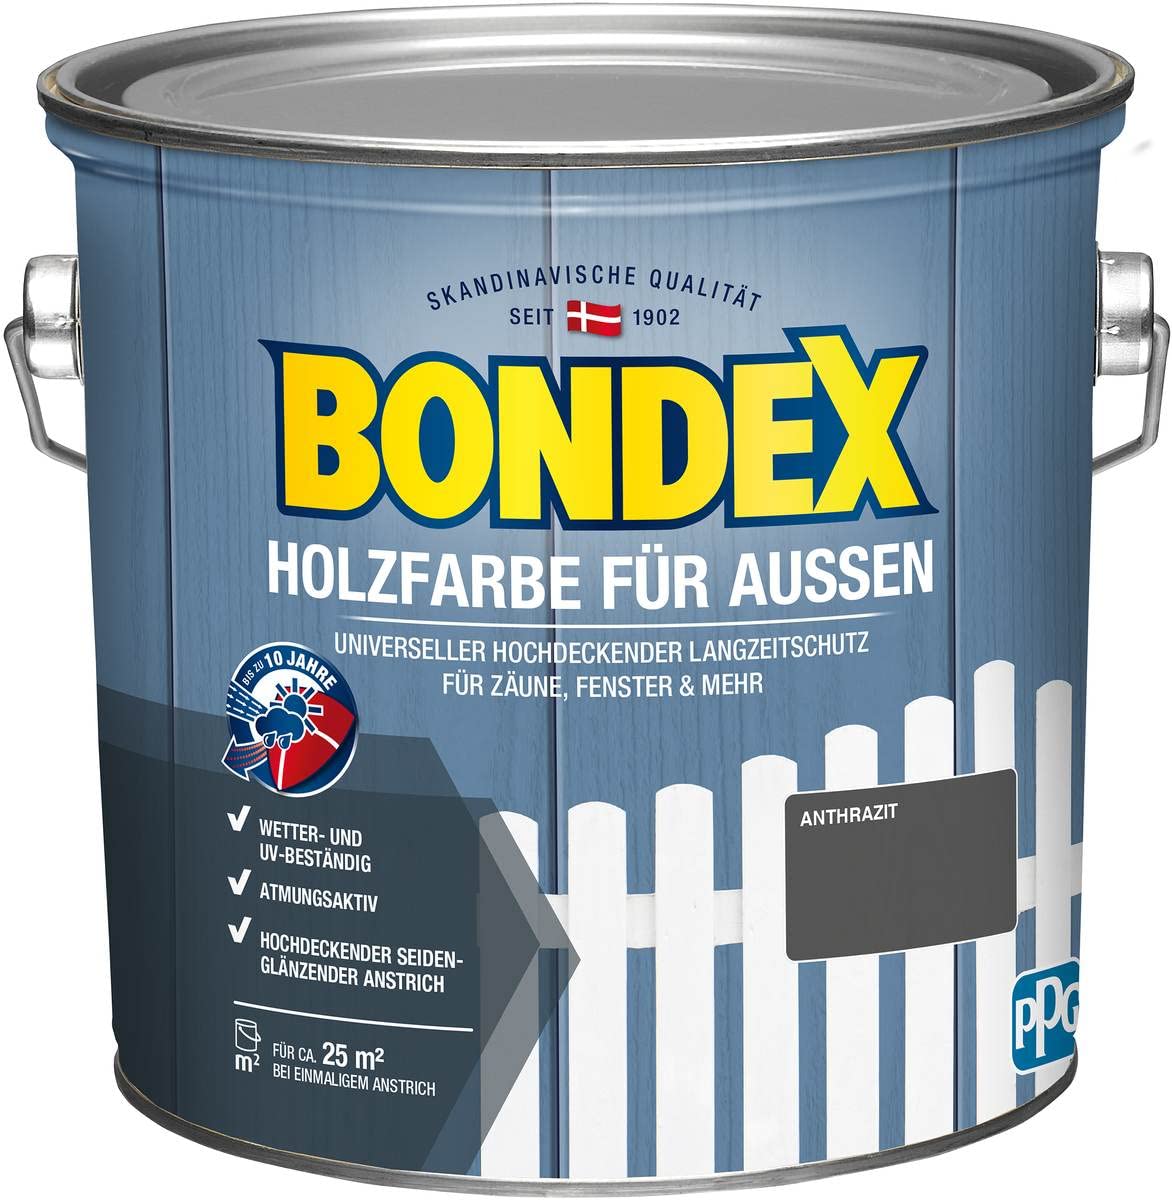 Bondex Holzfarbe für Außen, 2,5 L, Anthrazit, für ca. 25 m², Wetter- & UV-beständig, atmungsaktiv, seidenglänzend